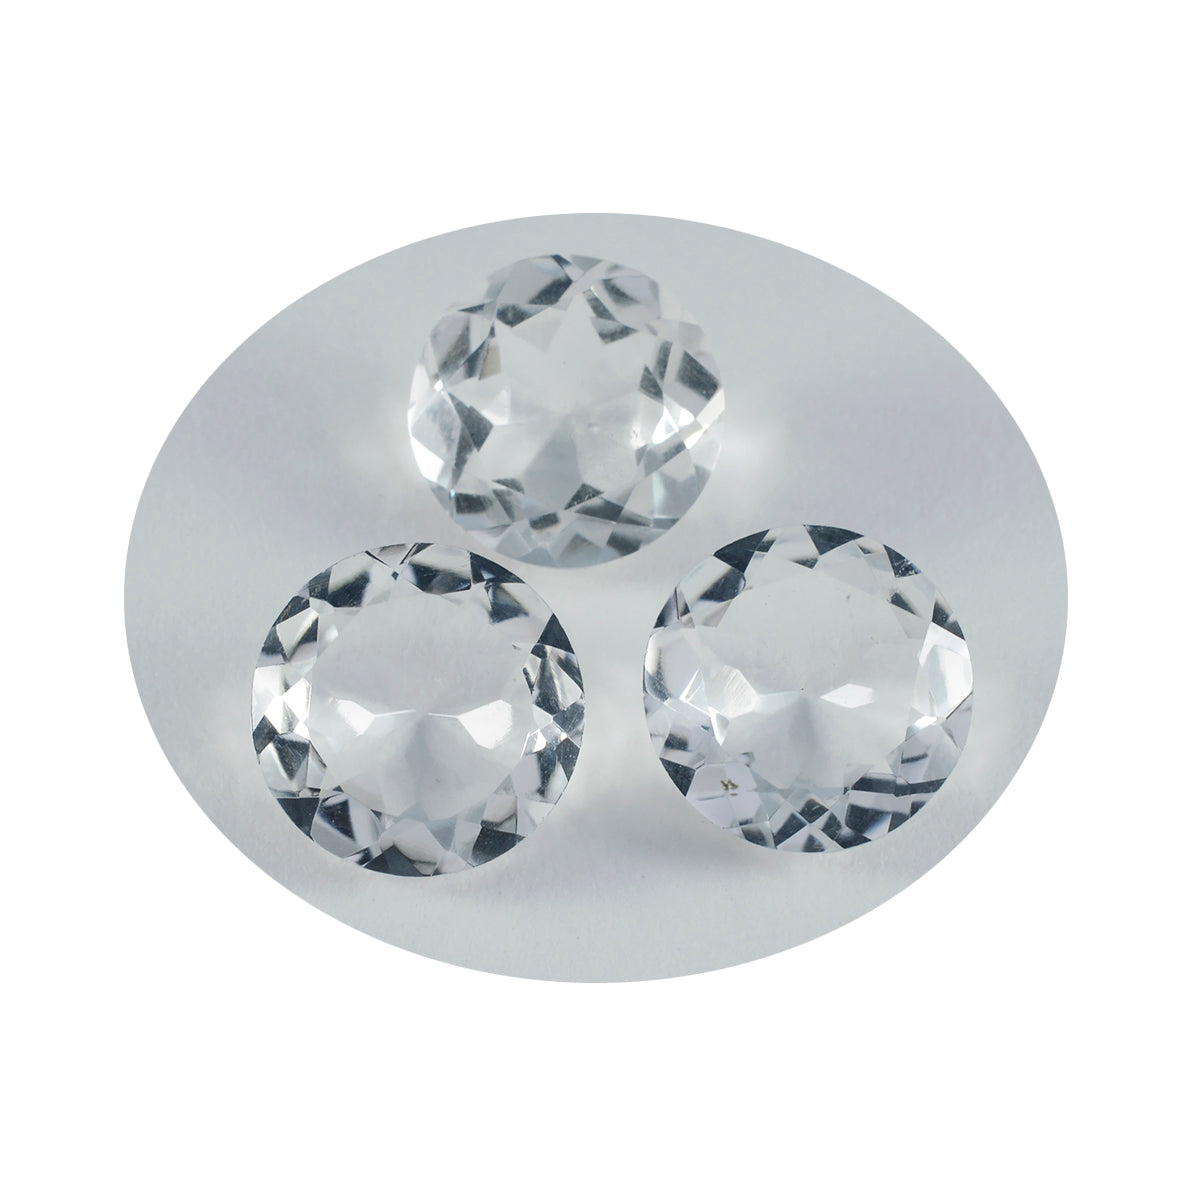 Riyogems 1 Stück weißer Kristallquarz, facettiert, 14 x 14 mm, runde Form, schöner Qualitätsstein